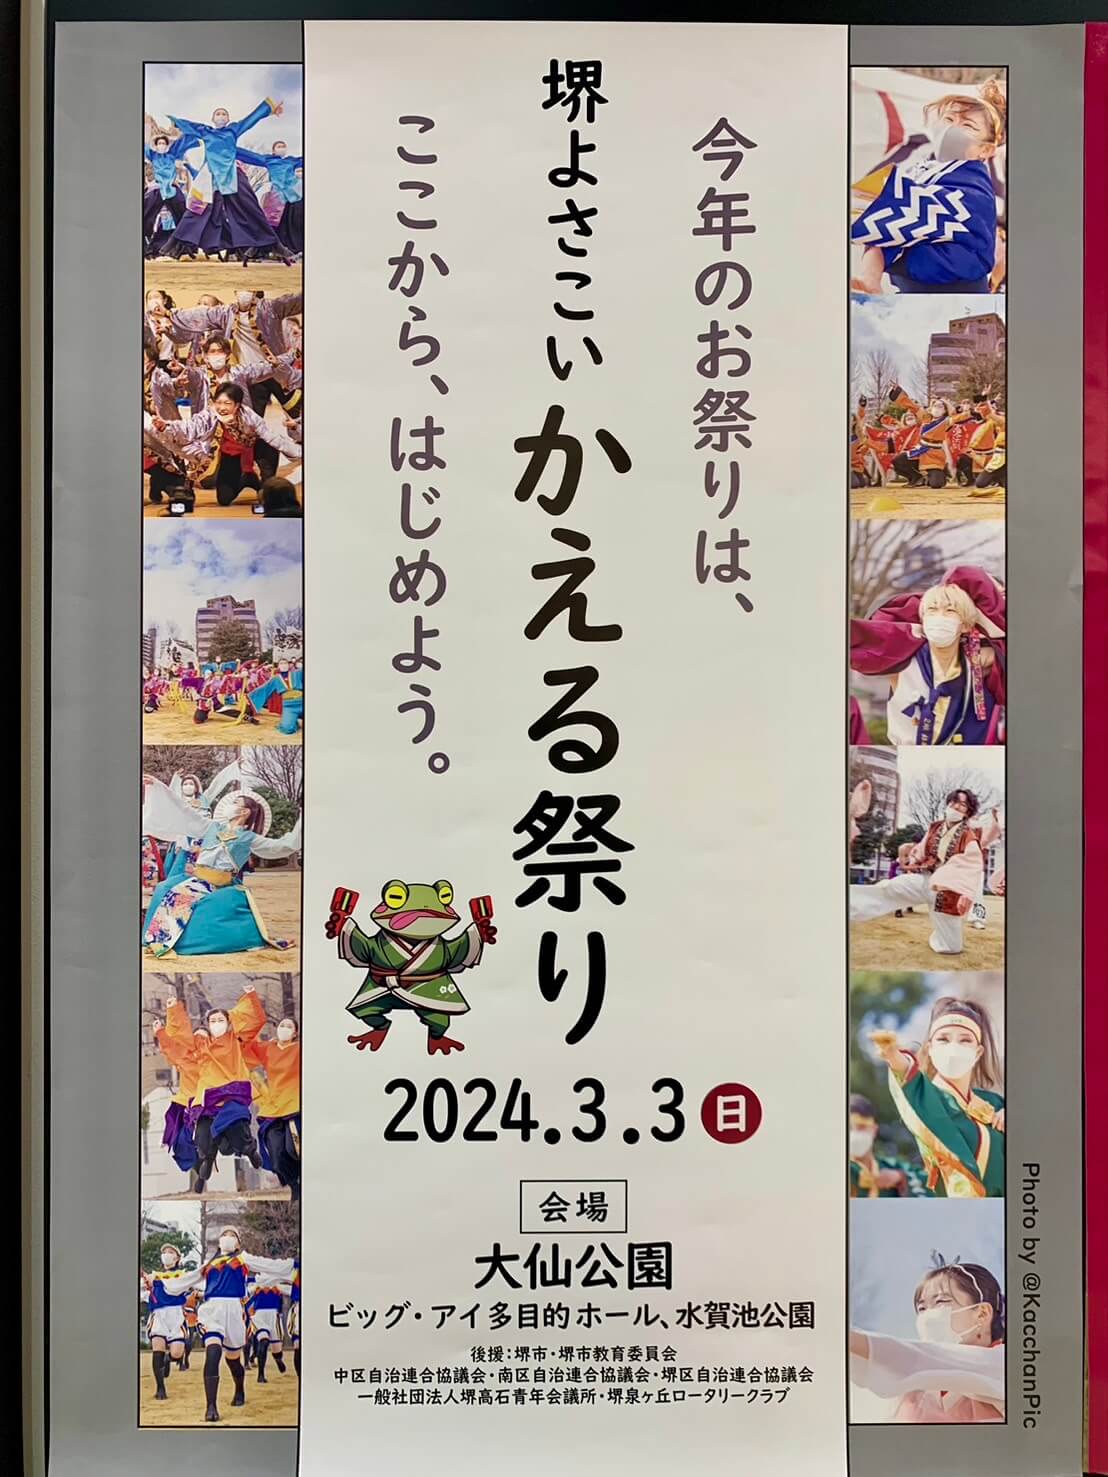 【イベント】2024.3/3(日)開催★今年度から新たに大仙公園会場で『堺よさこいかえる祭り』！熱いよさこいを観に行こう♪：